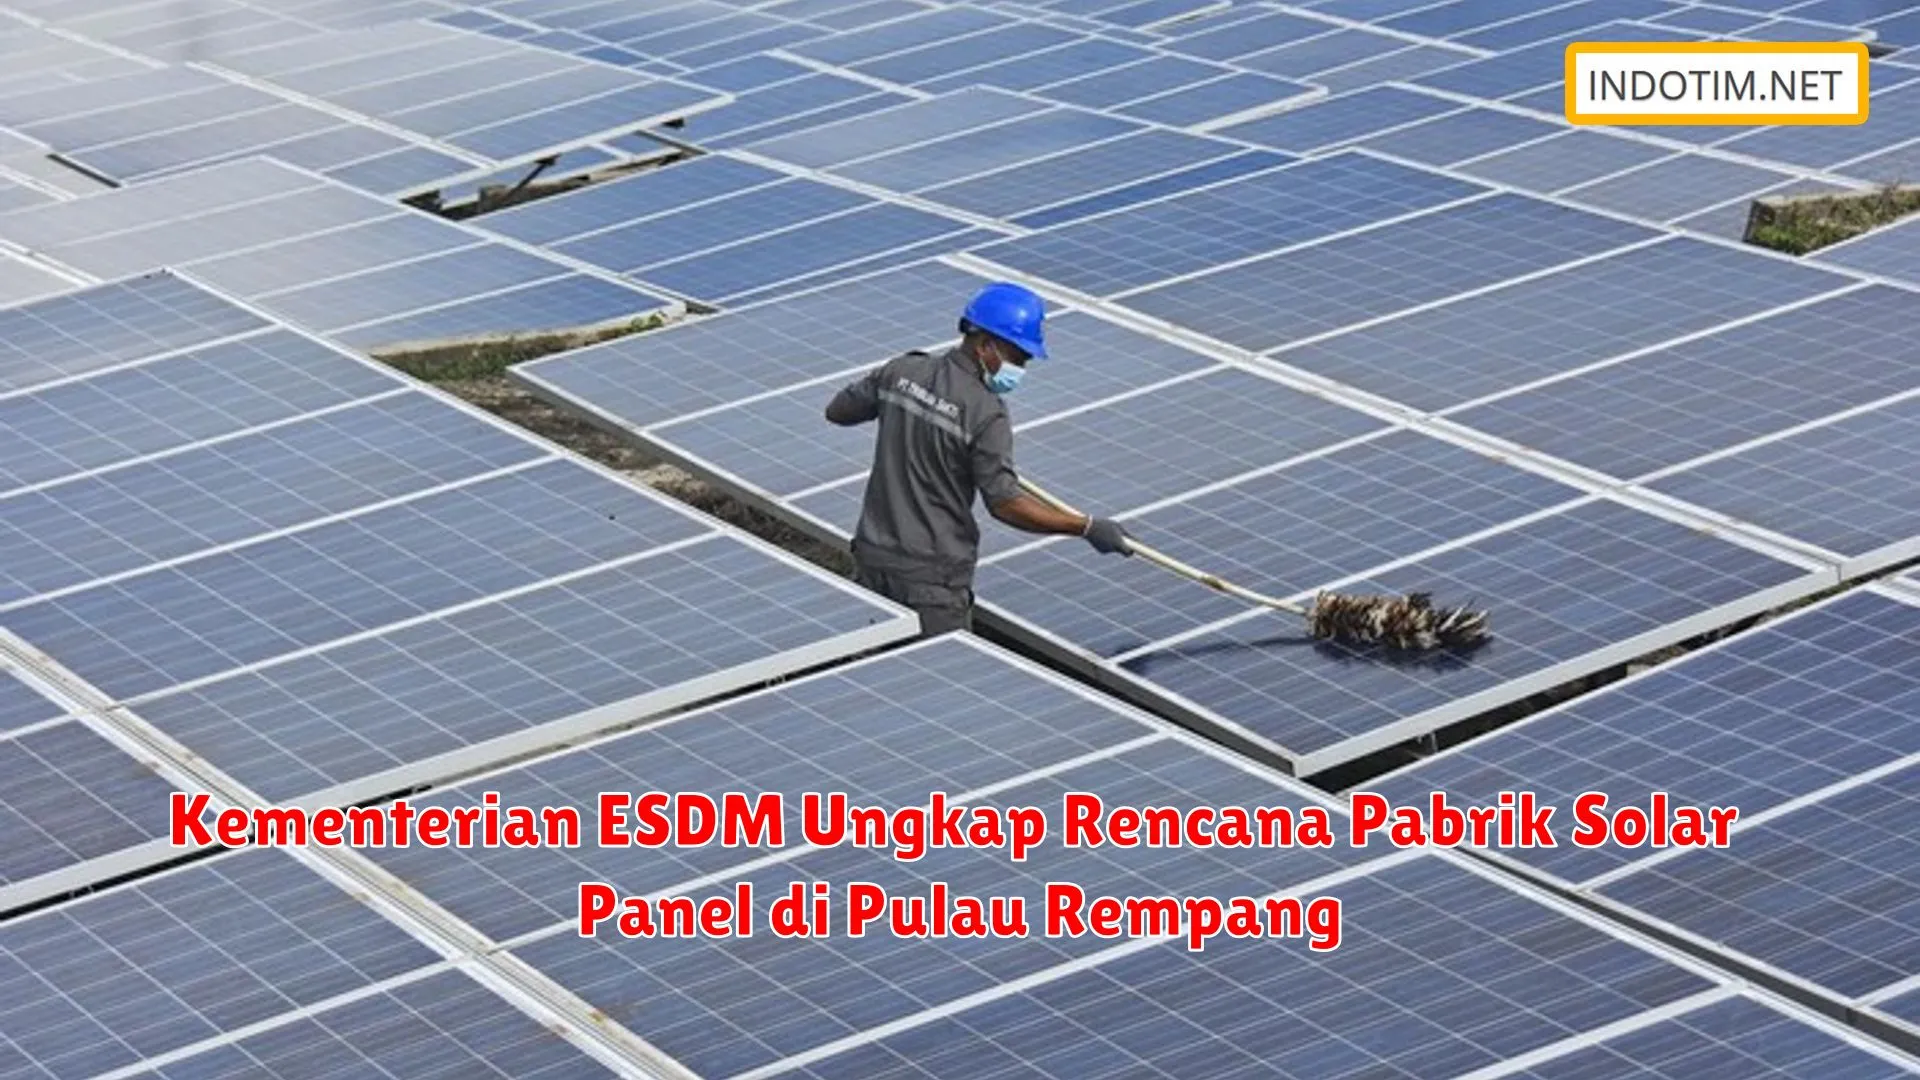 Kementerian ESDM Ungkap Rencana Pabrik Solar Panel di Pulau Rempang